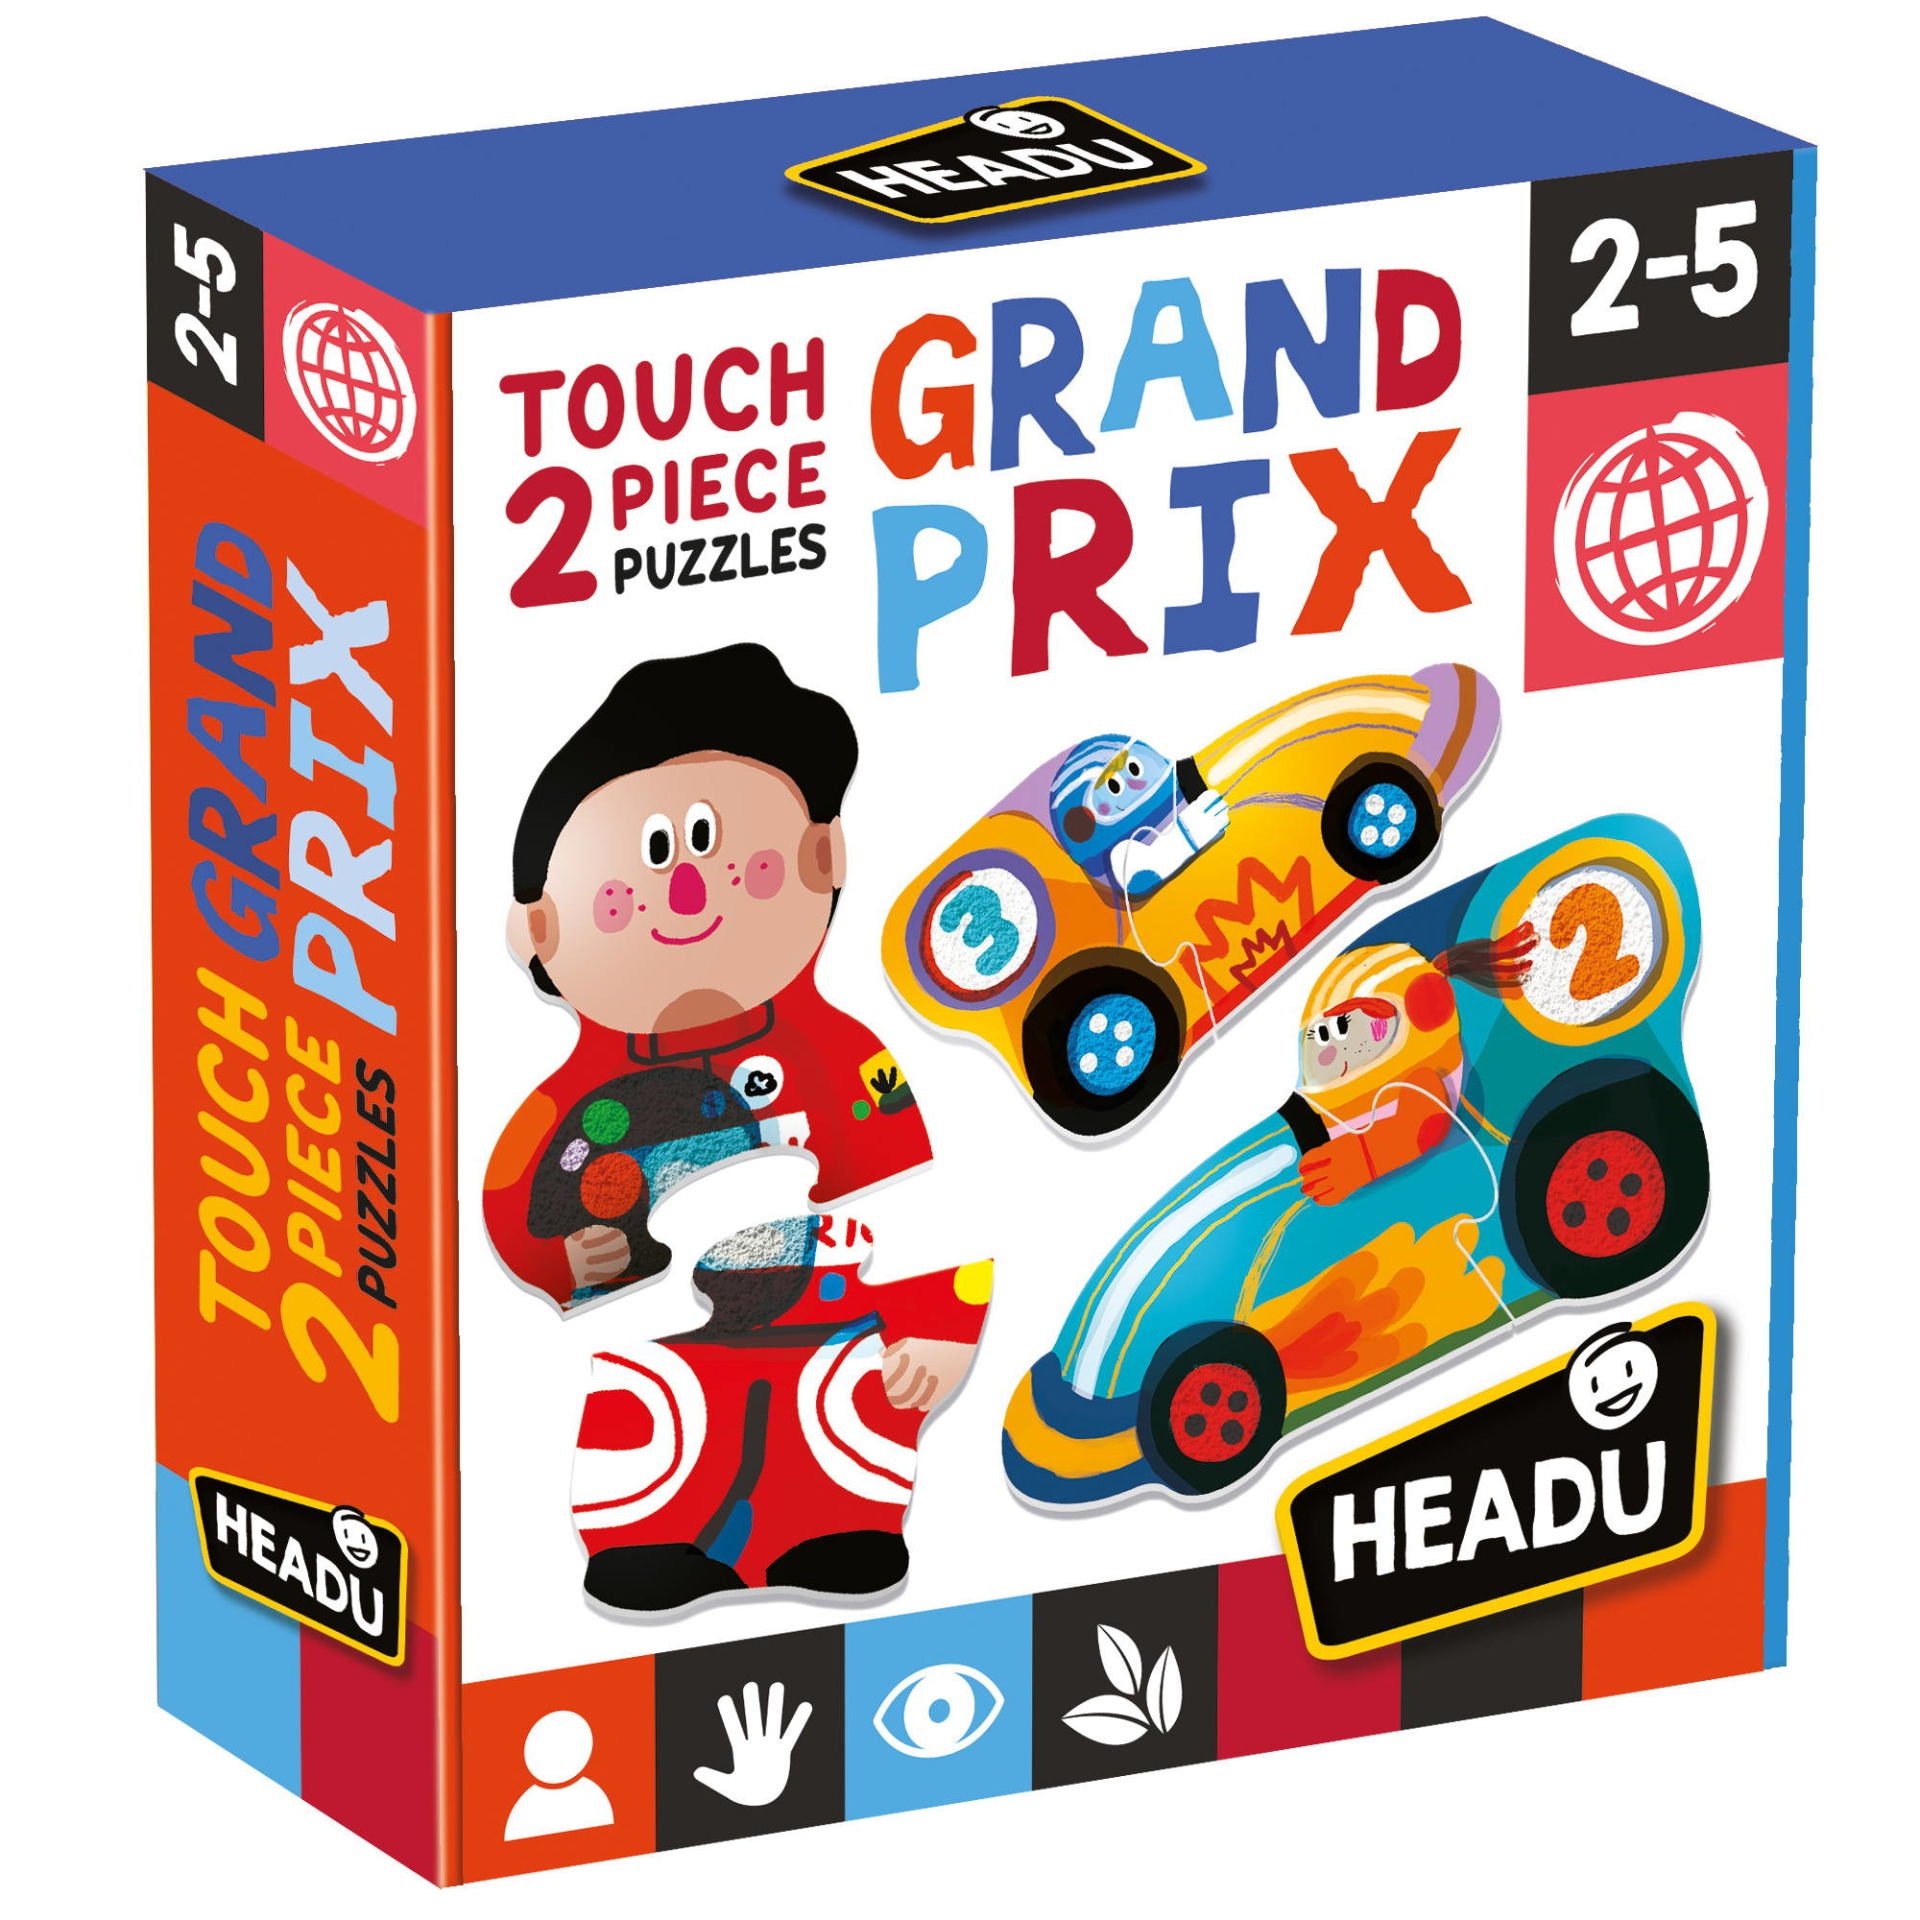 2 Pieces Touch Puzzle Grand Prix